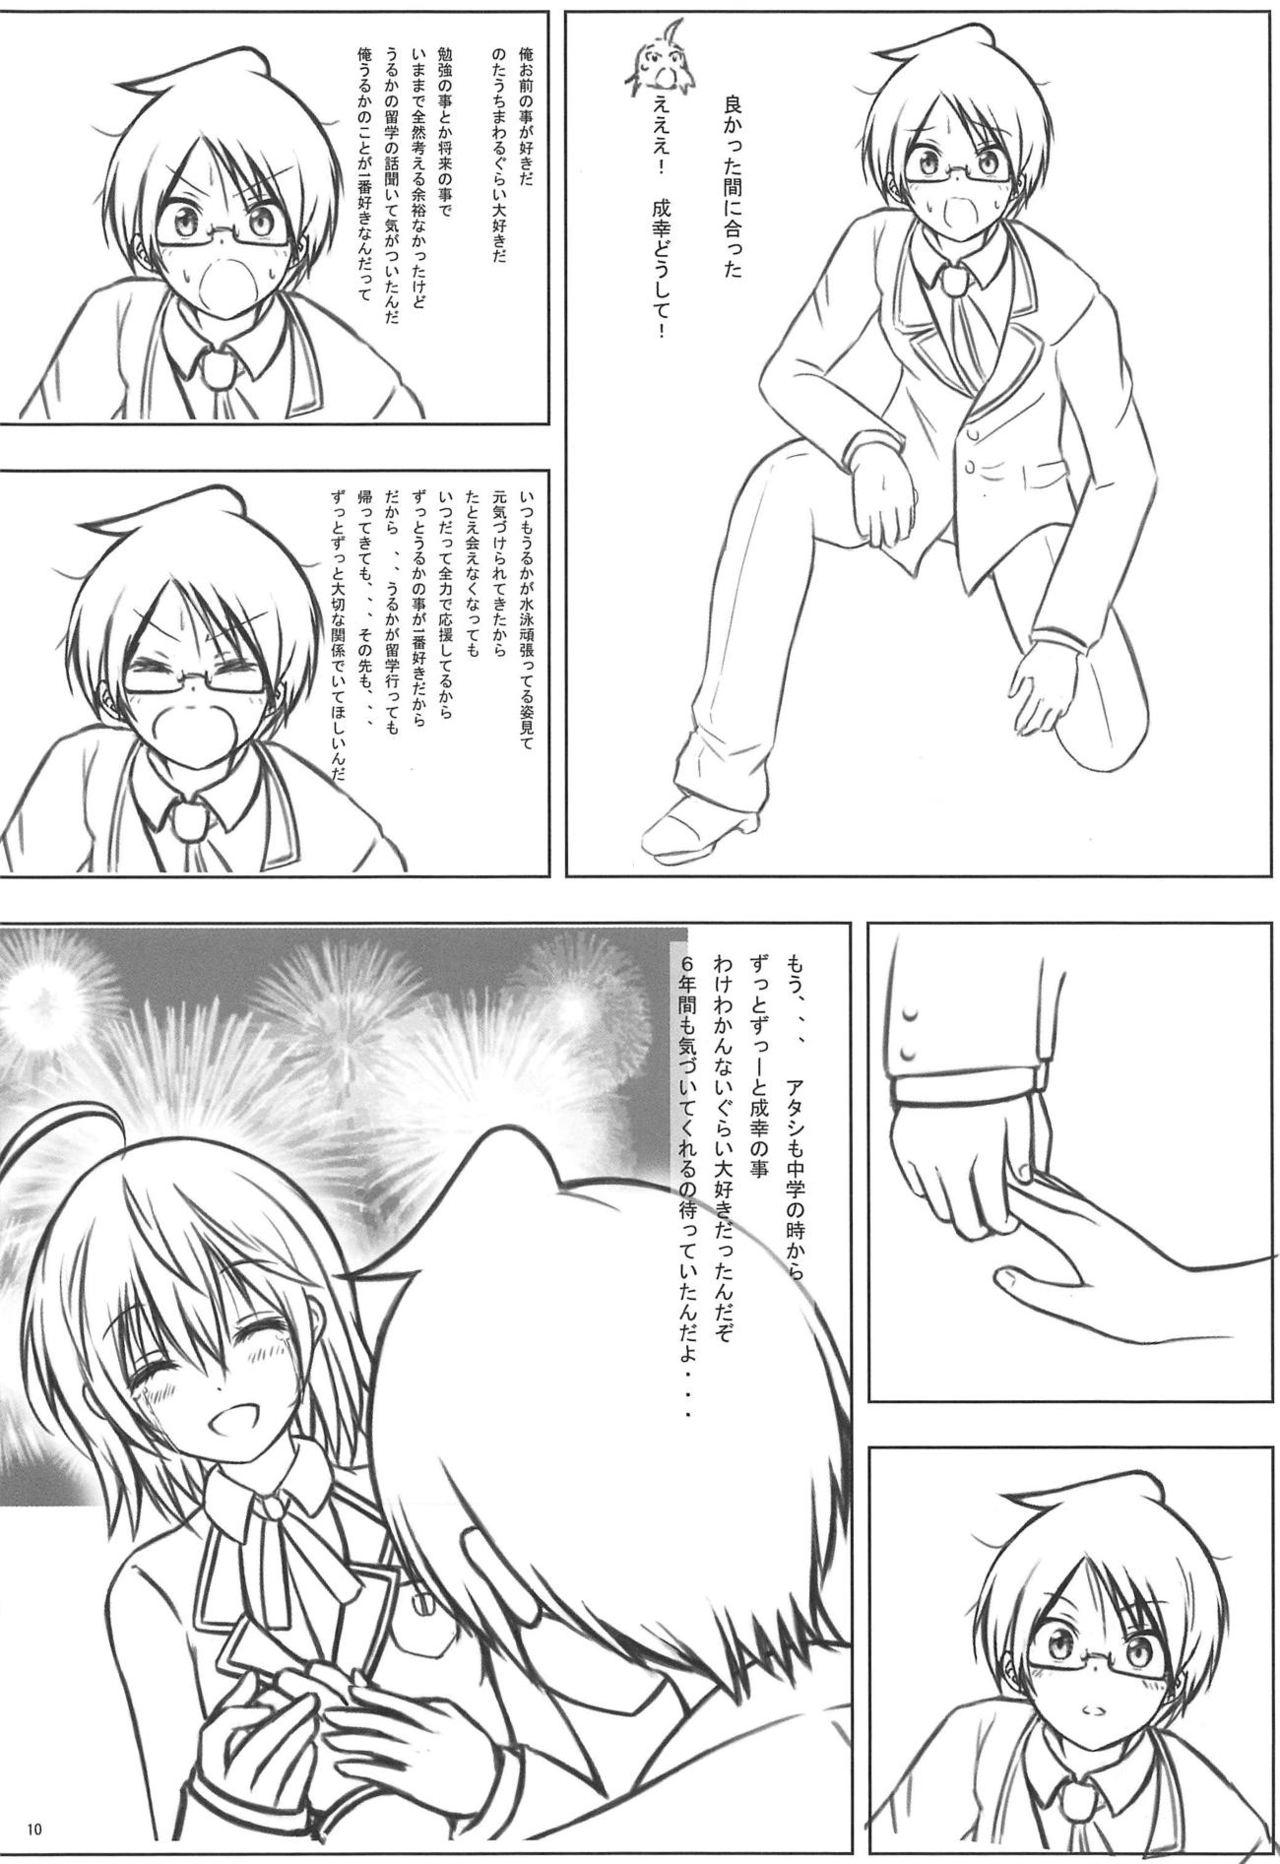 Topless Uruka After - Bokutachi wa benkyou ga dekinai Rola - Page 9